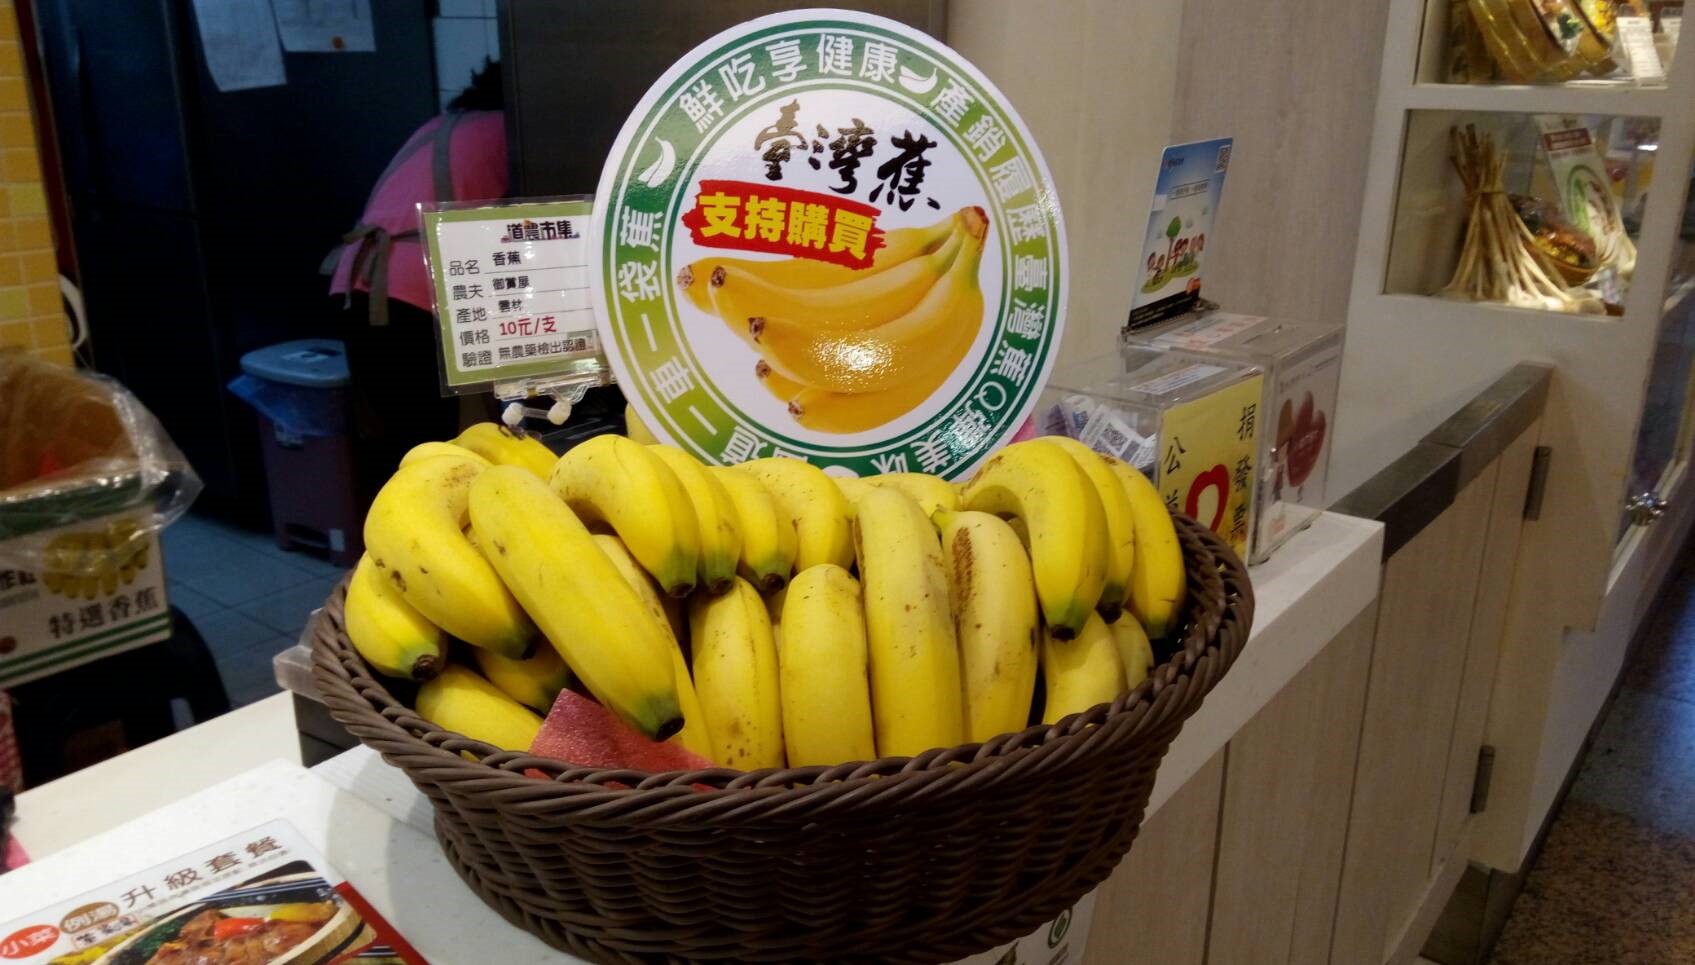 「粽香蕉」國道創意推蕉端午體驗包粽樂 6/18上午10:00-12:00歡迎蕉伙來玩